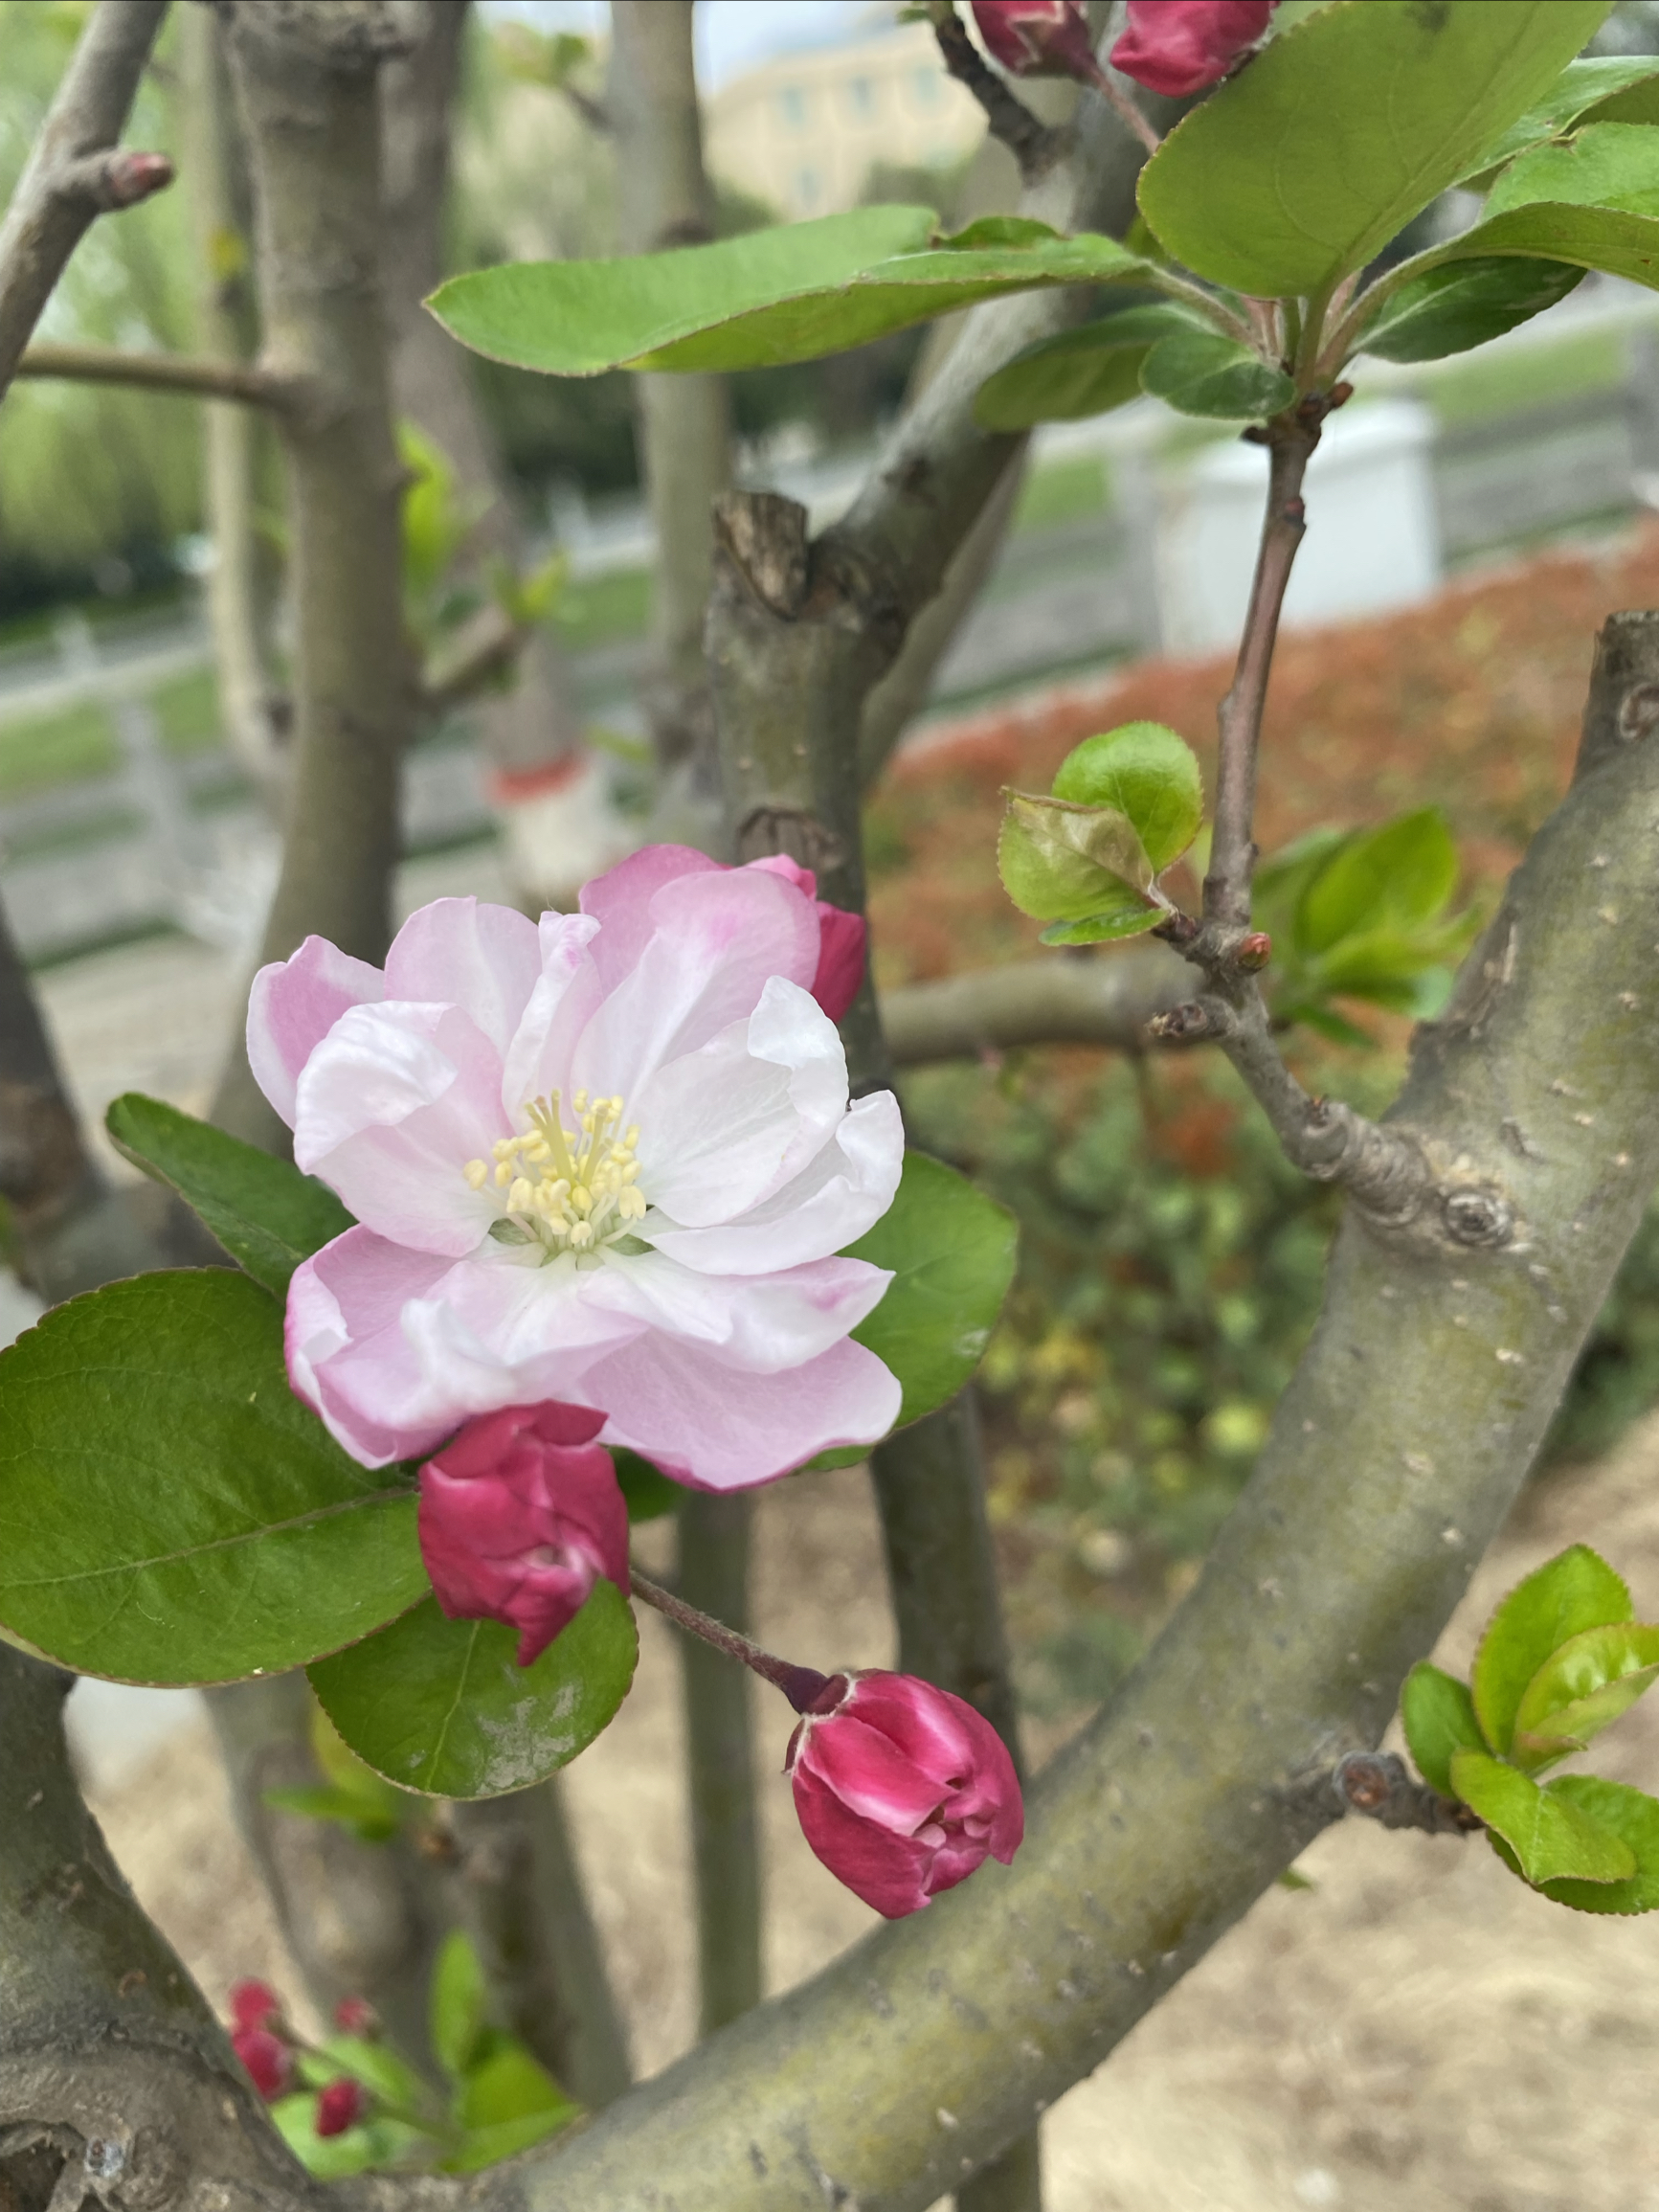 桃花烂漫时，朵朵娇艳欲滴的花儿从枝头喷薄而出，似一抹粉色的云彩点缀着蓝天，洋溢着生命的热烈。